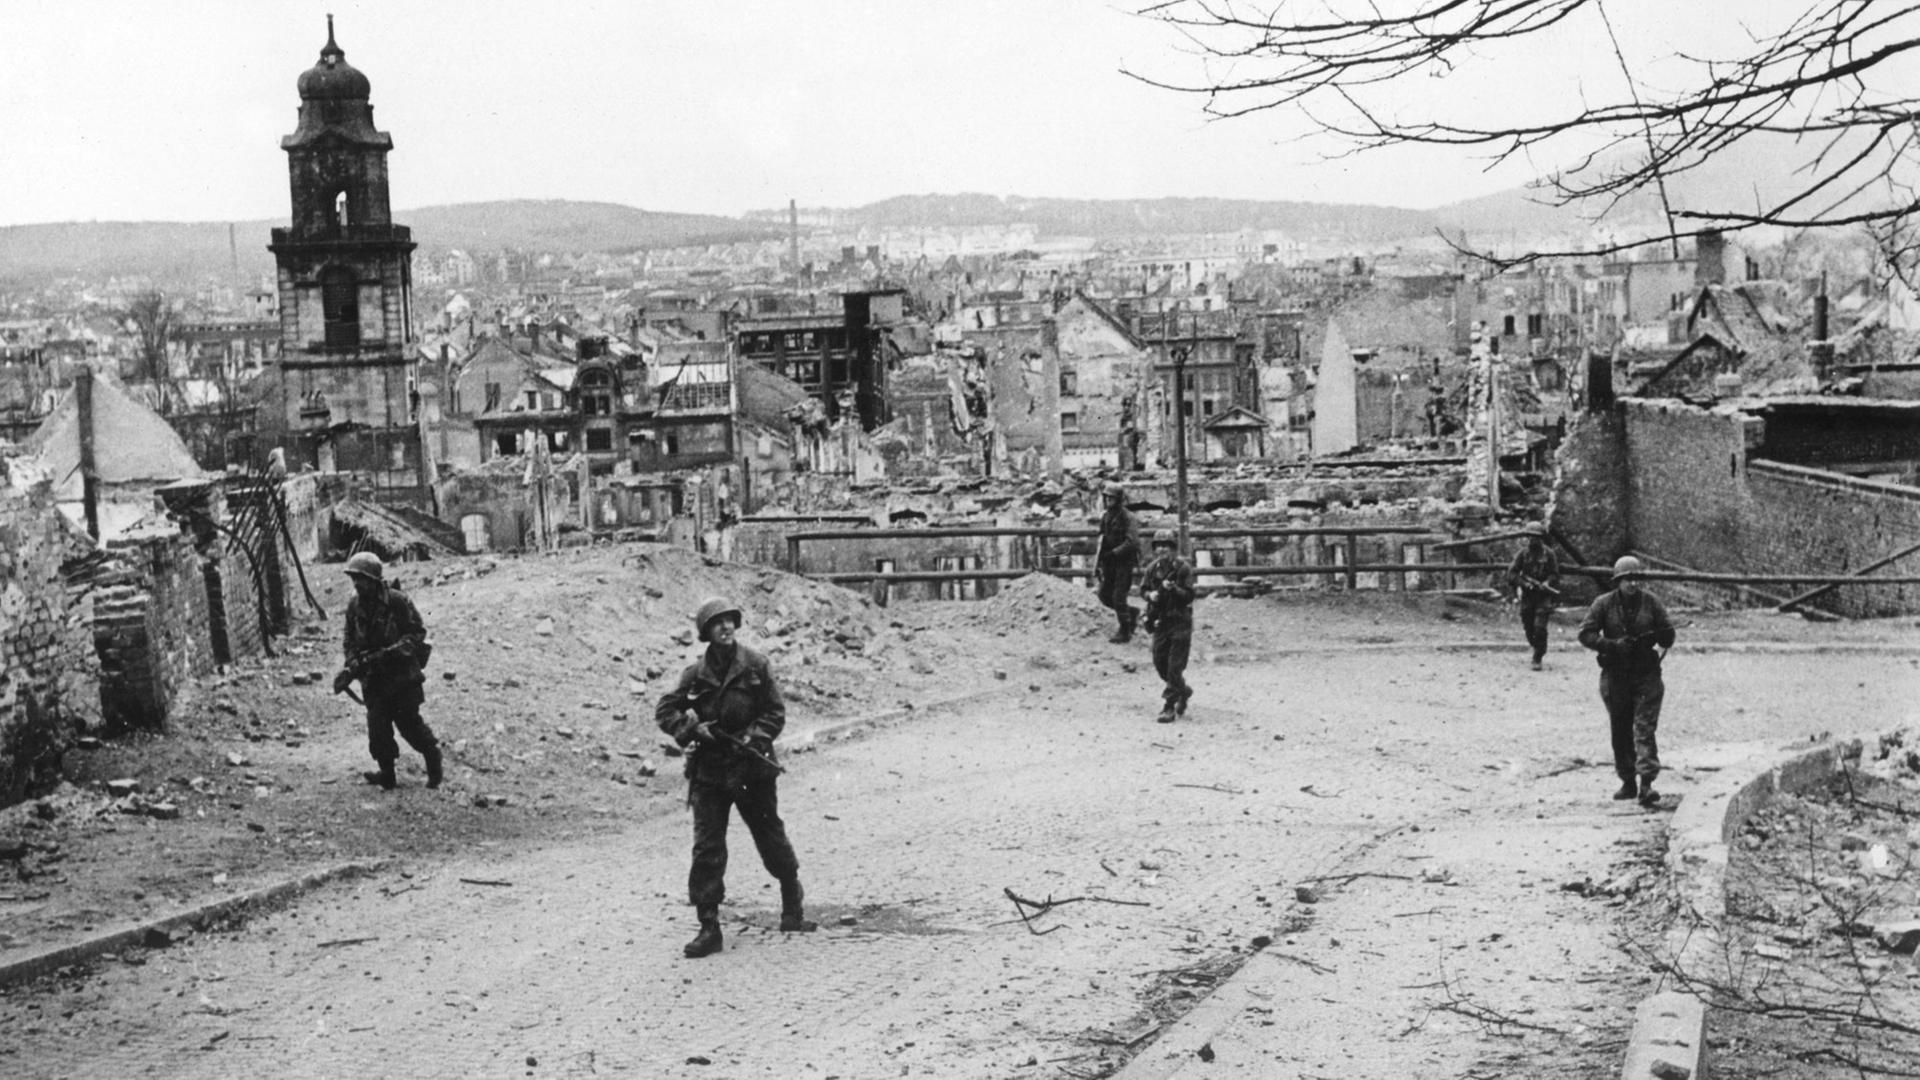 Soldaten der 70. Division der 7. US-Armee gehen am 20.03.1945 durch das zerstörte Saarbrücken. Die Stadt wurde durch Luftangriffe und Artilleriegeschütze in Trümmern gelegt und am 20.03.1945 von US-Truppen eingenommen.